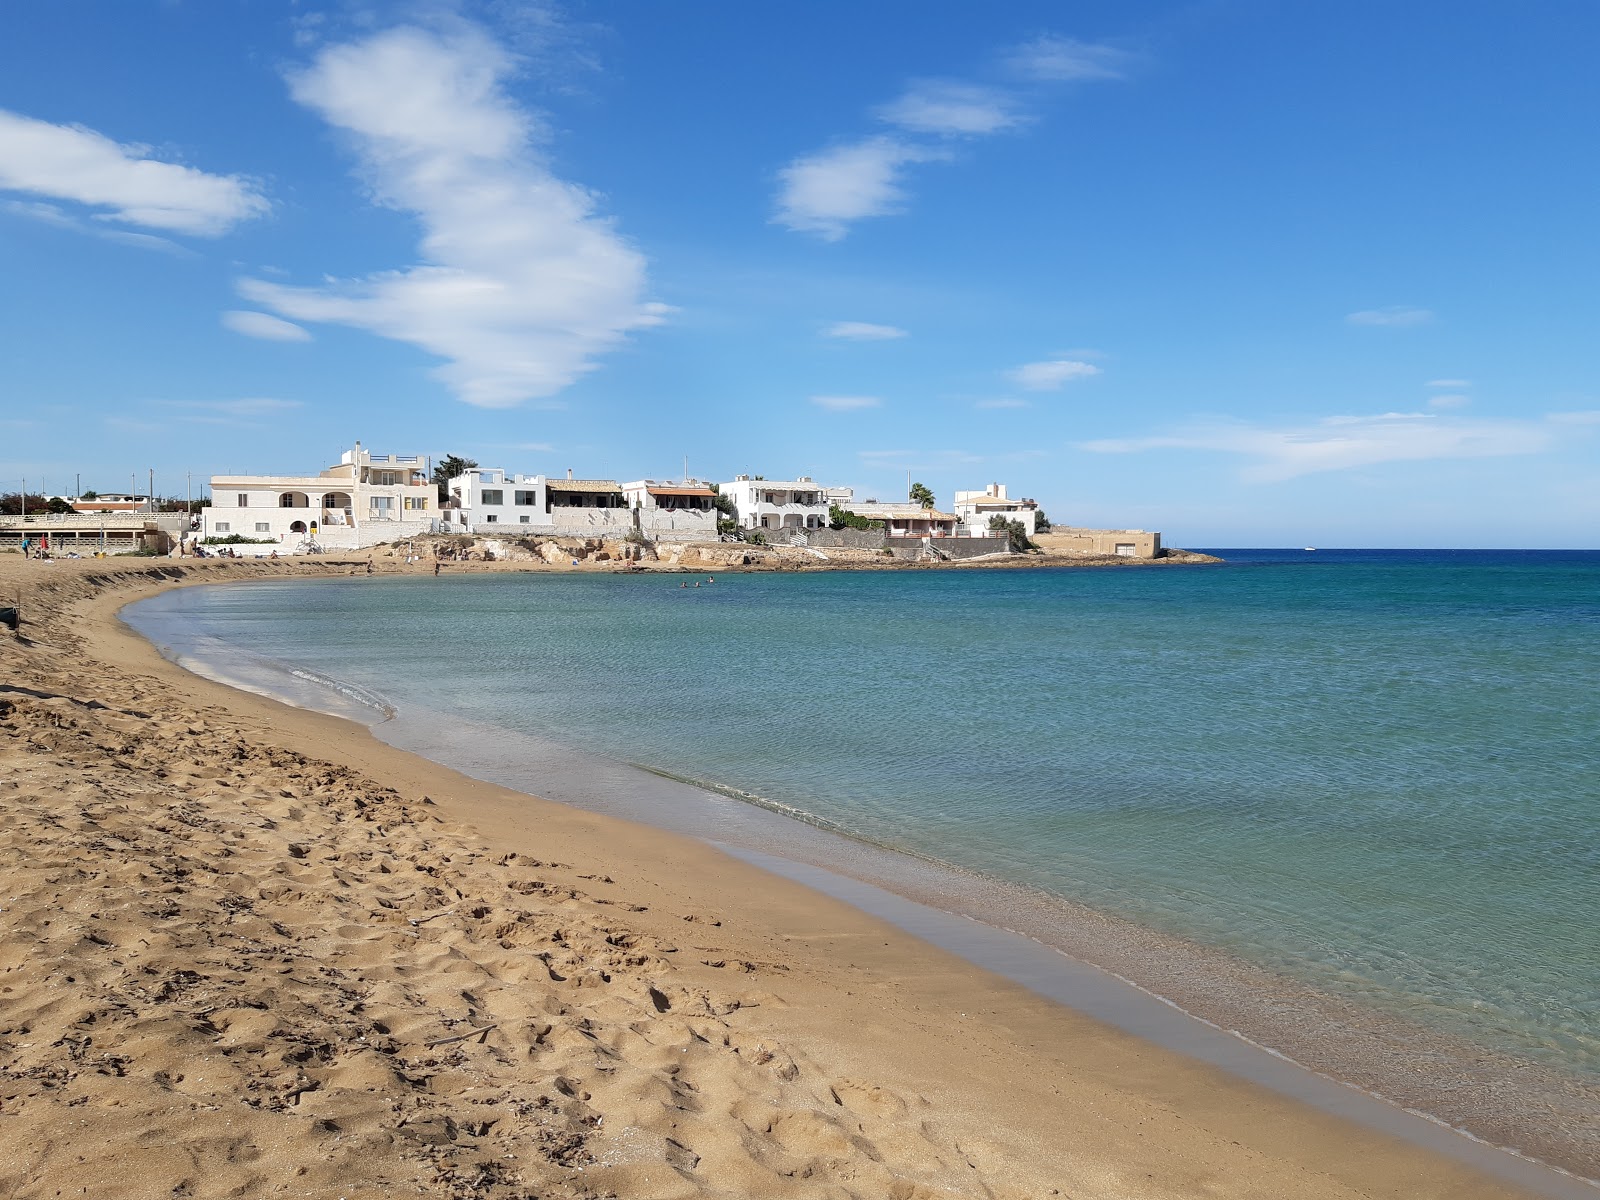 Spiaggia Morghella'in fotoğrafı kahverengi kum yüzey ile